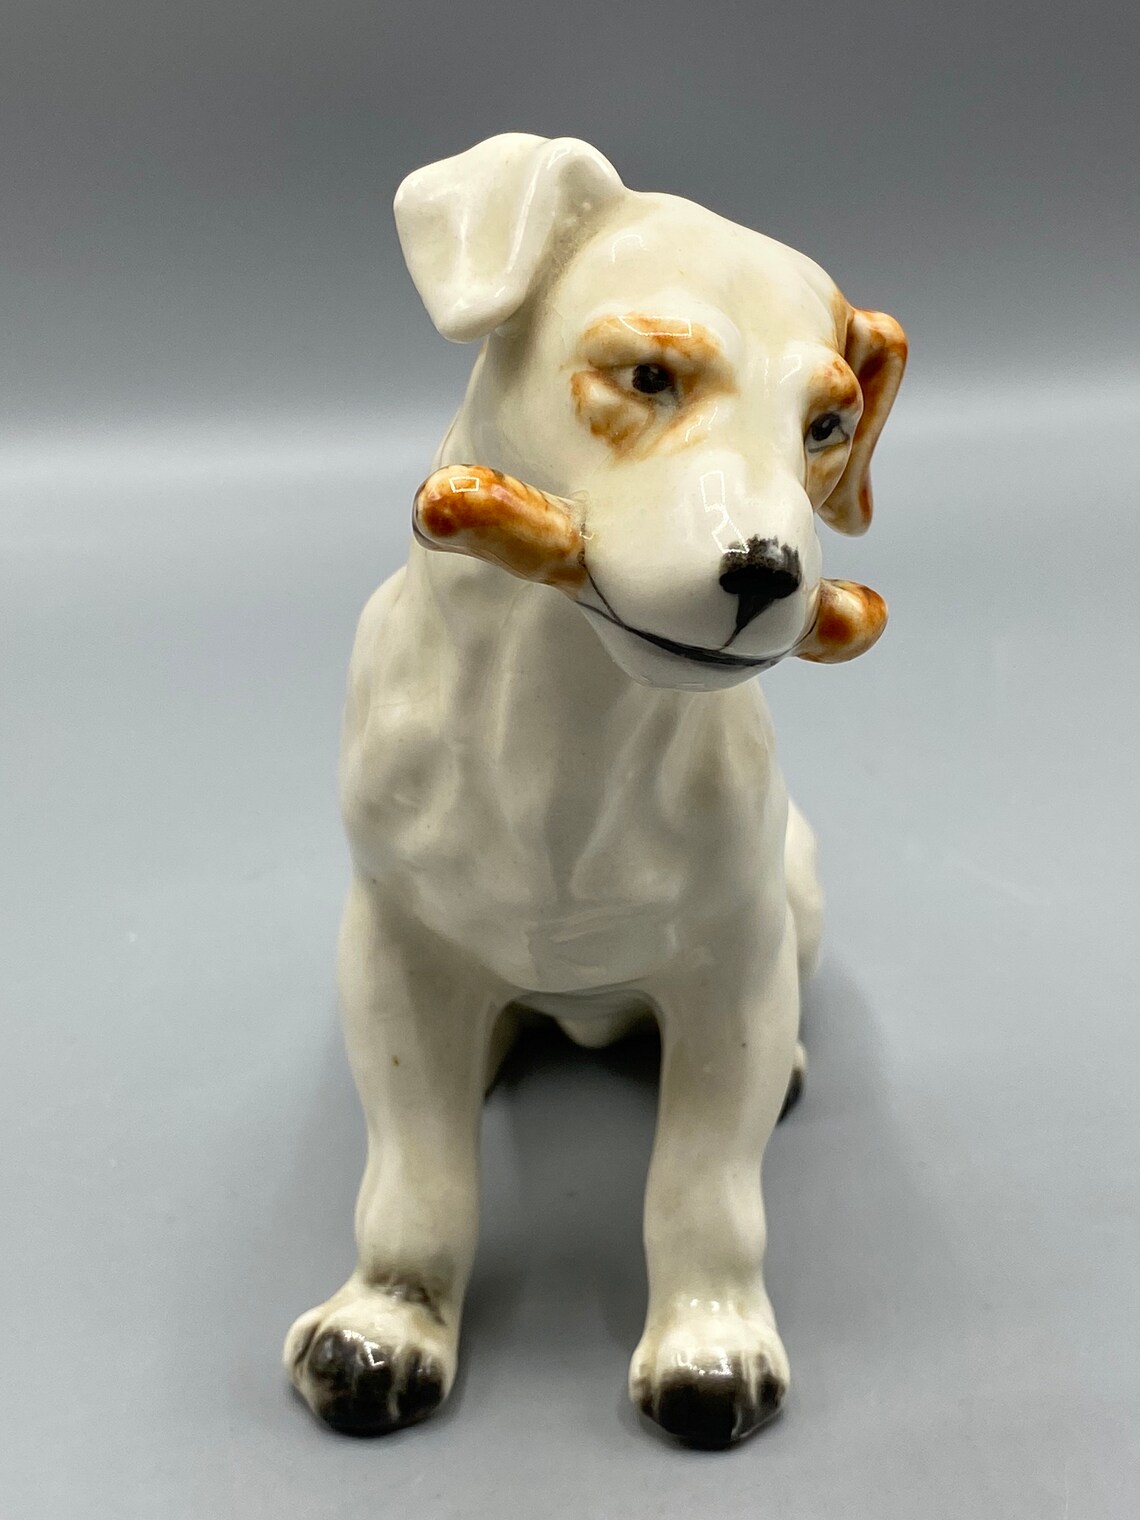 Vintage Porcelain Puppy Dog Made in Japan | Etsy